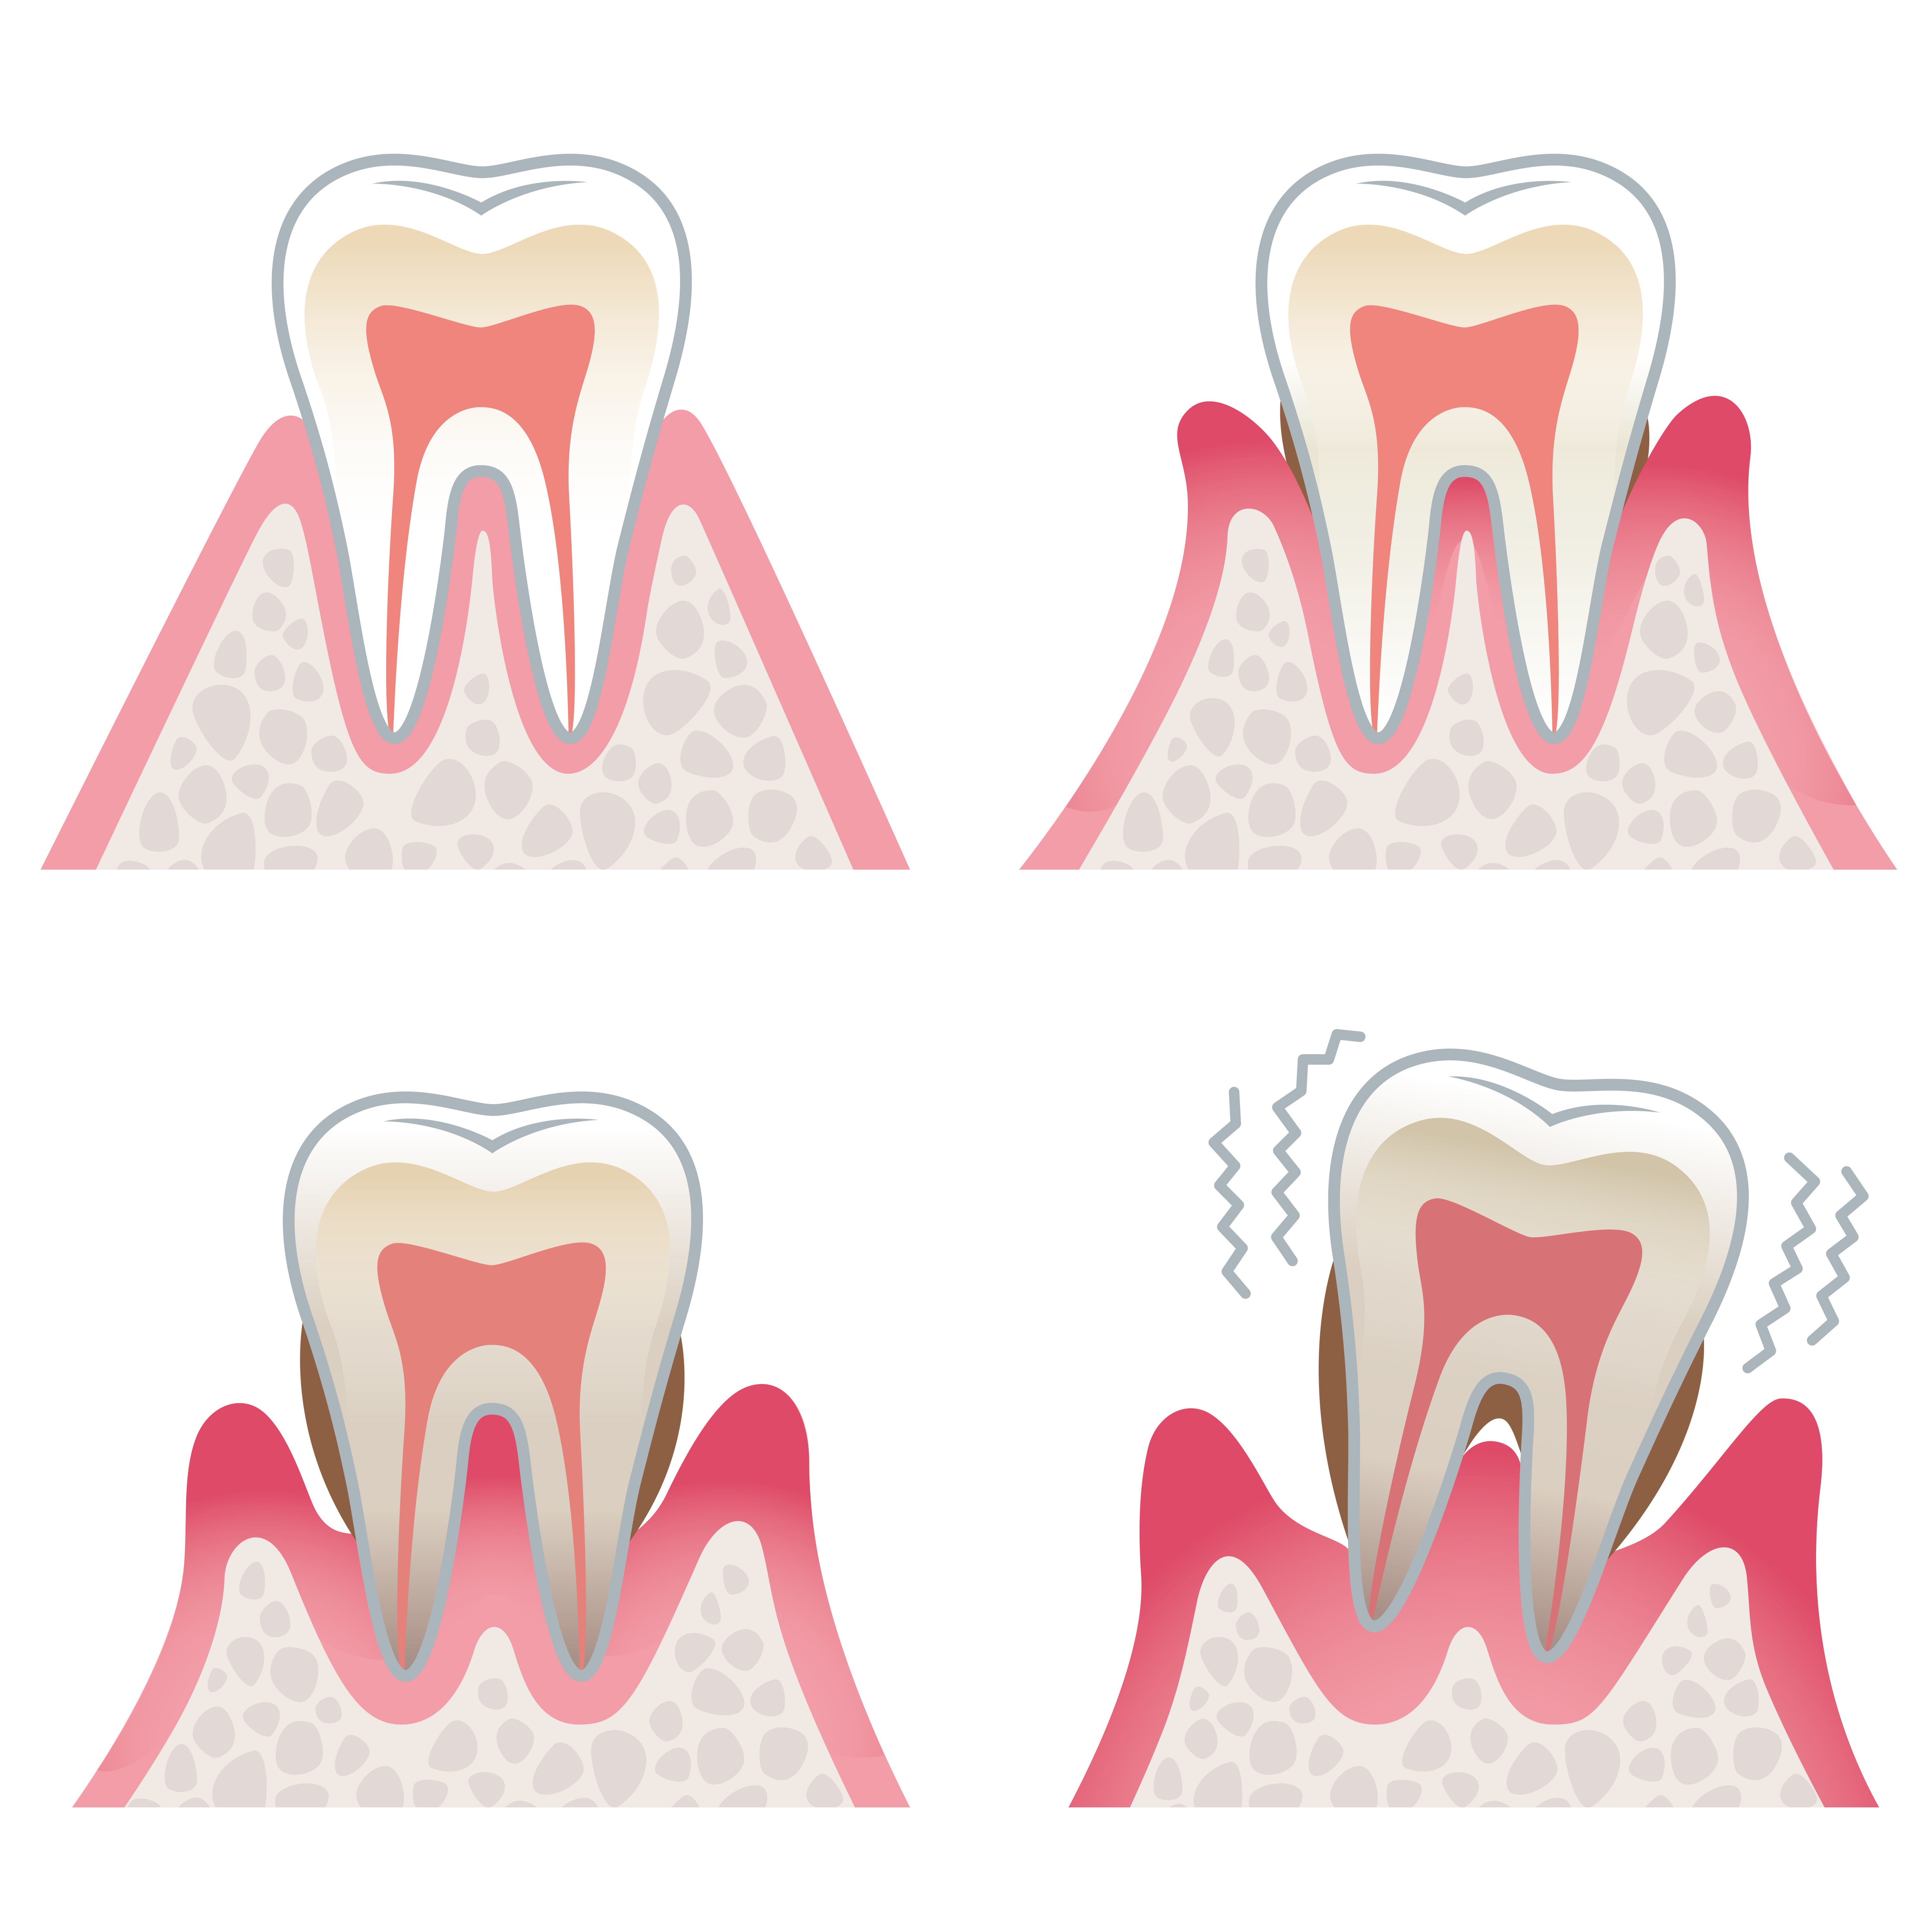 Symptoms of Gum Disease